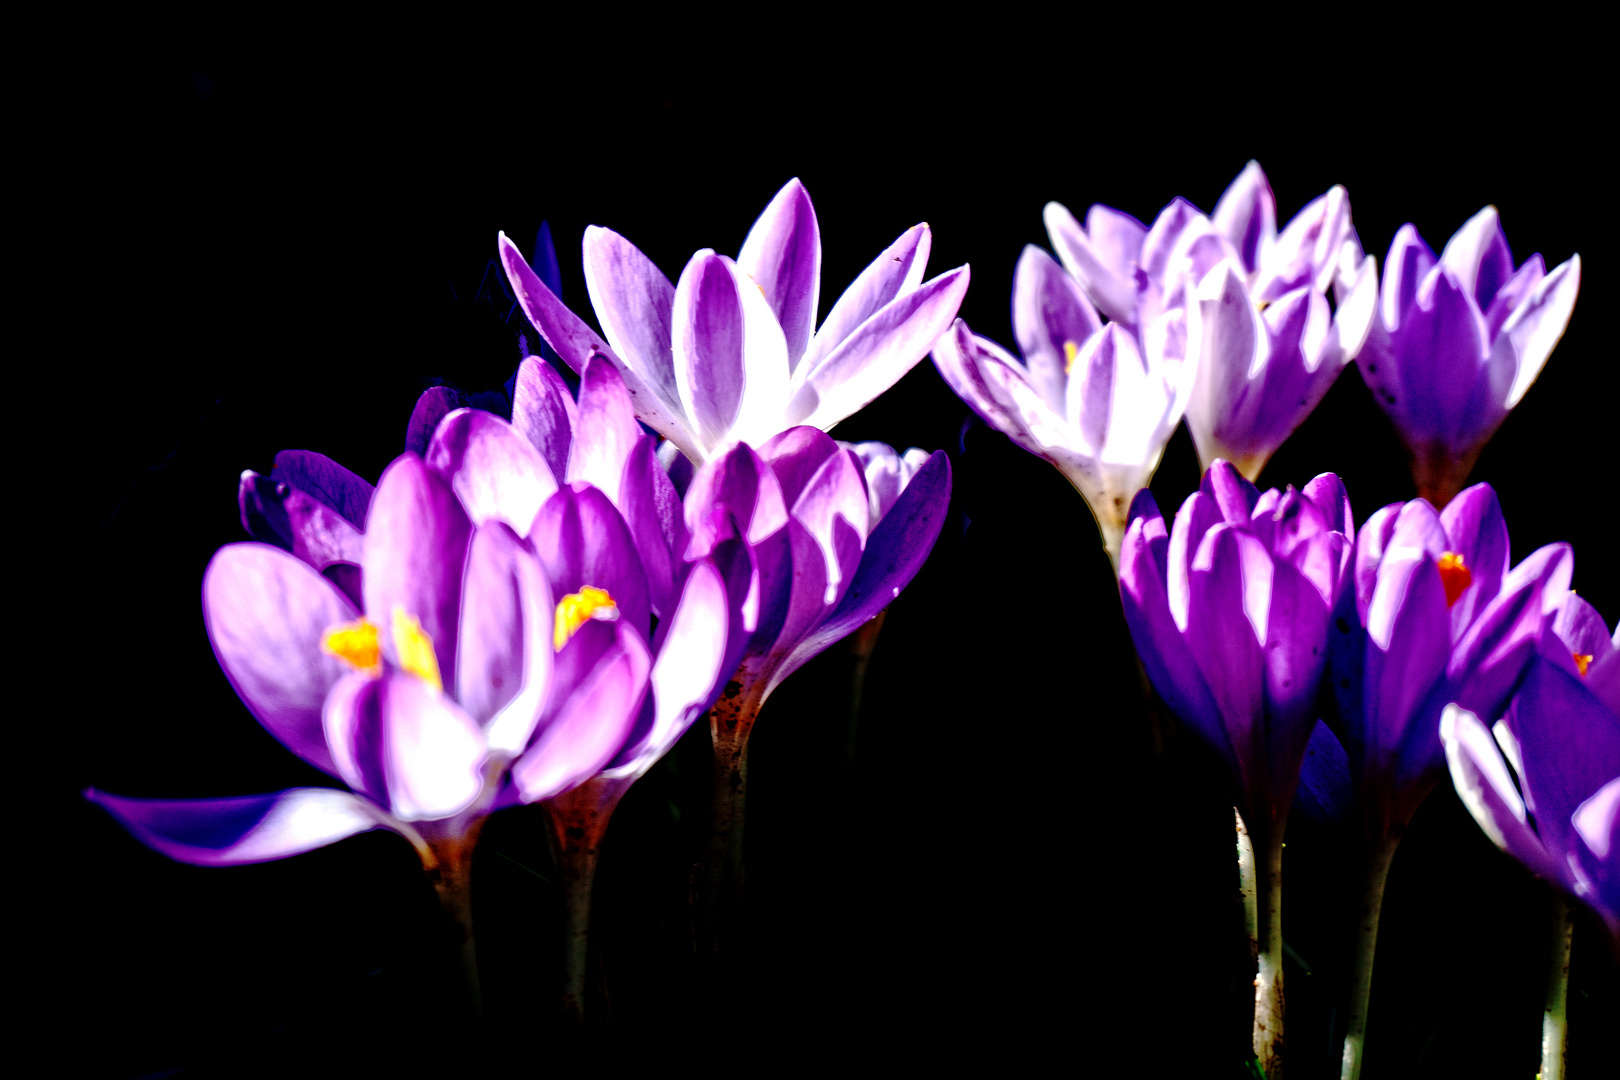 Als Mittwochsblümchen - Collage 12 mit Krokussen als Frühlingsboten